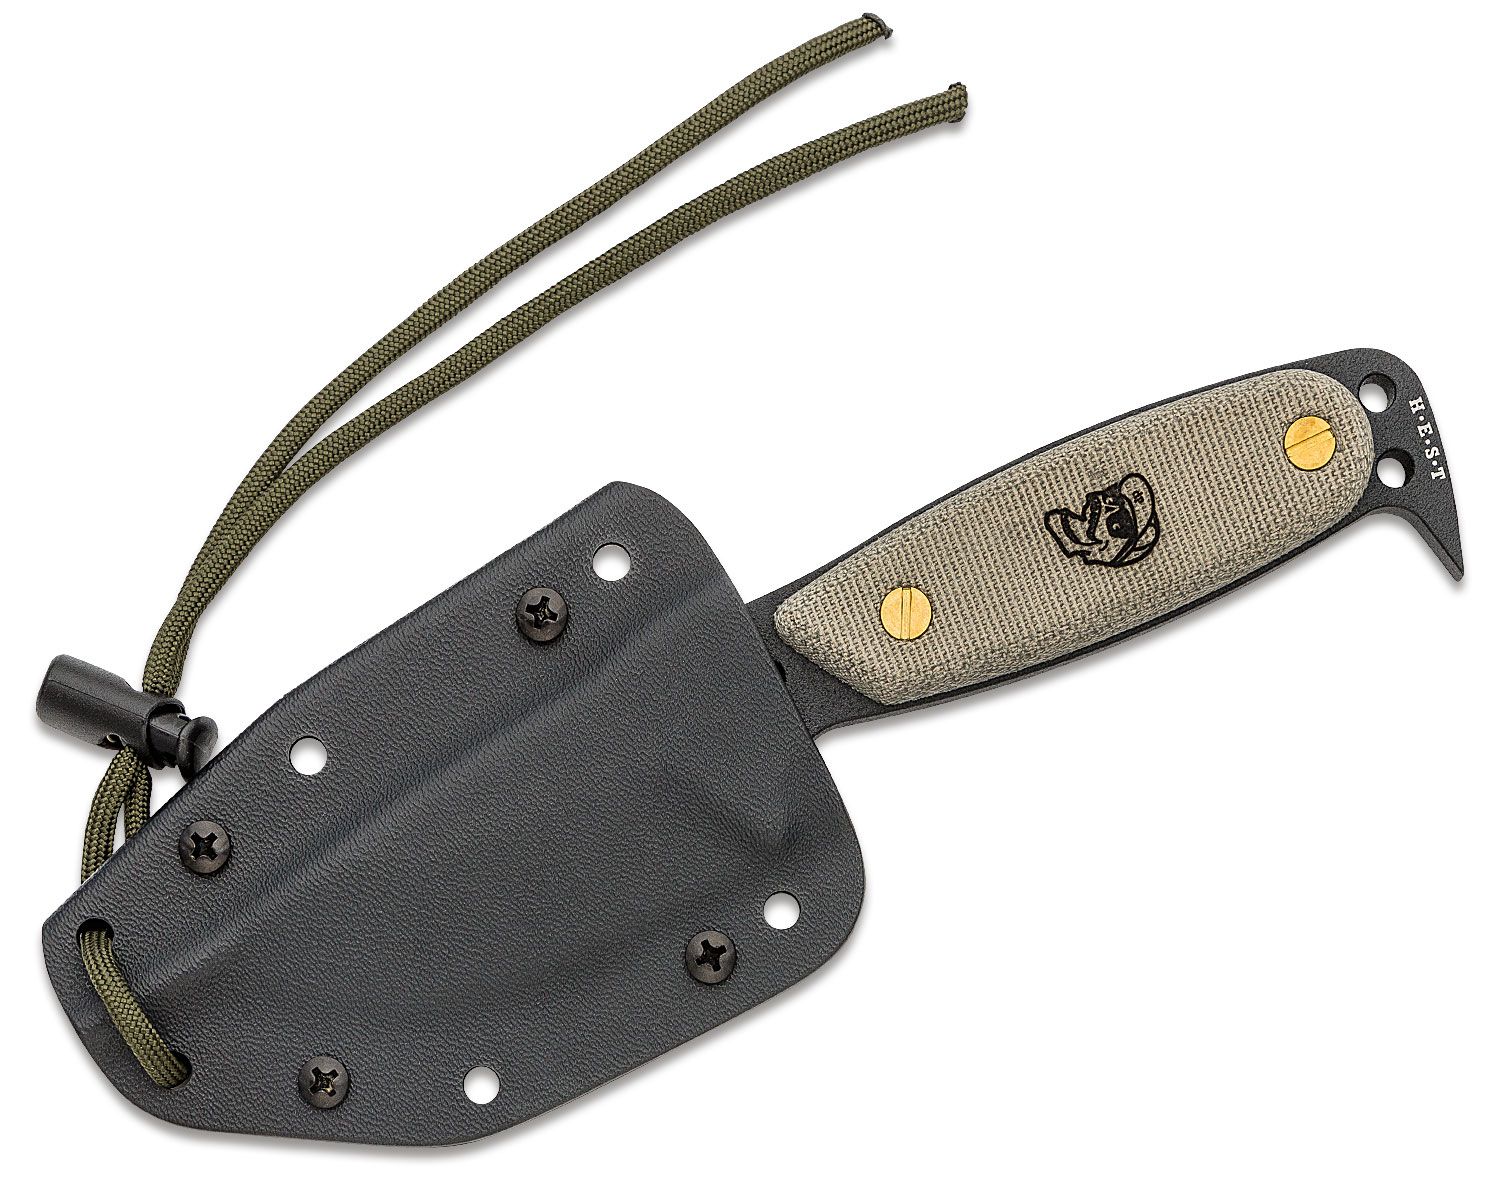 Green DPx - HEST Gear Handles Micarta Original Blade, Rowen - DPHSX101 KnifeCenter Fixed - Discontinued by